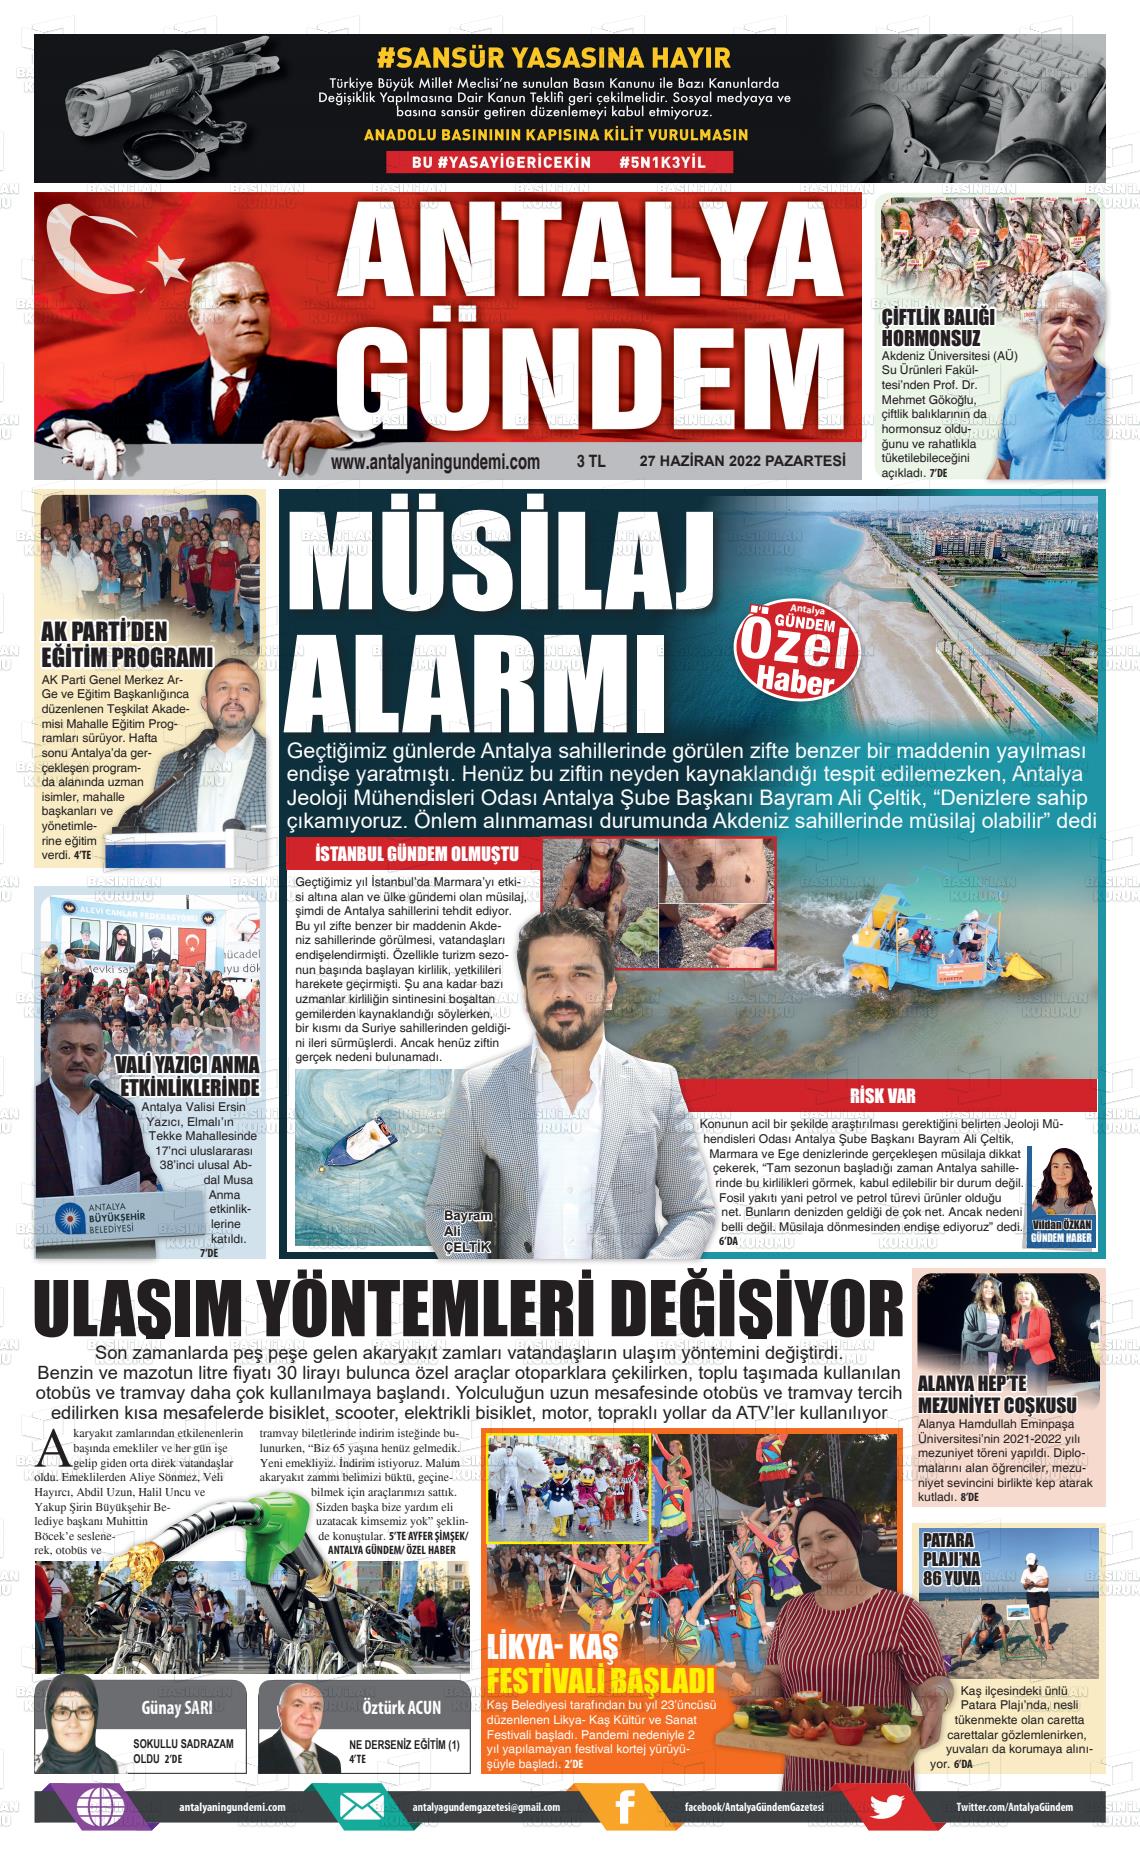 27 Haziran 2022 Antalya'nın Gündemi Gazete Manşeti